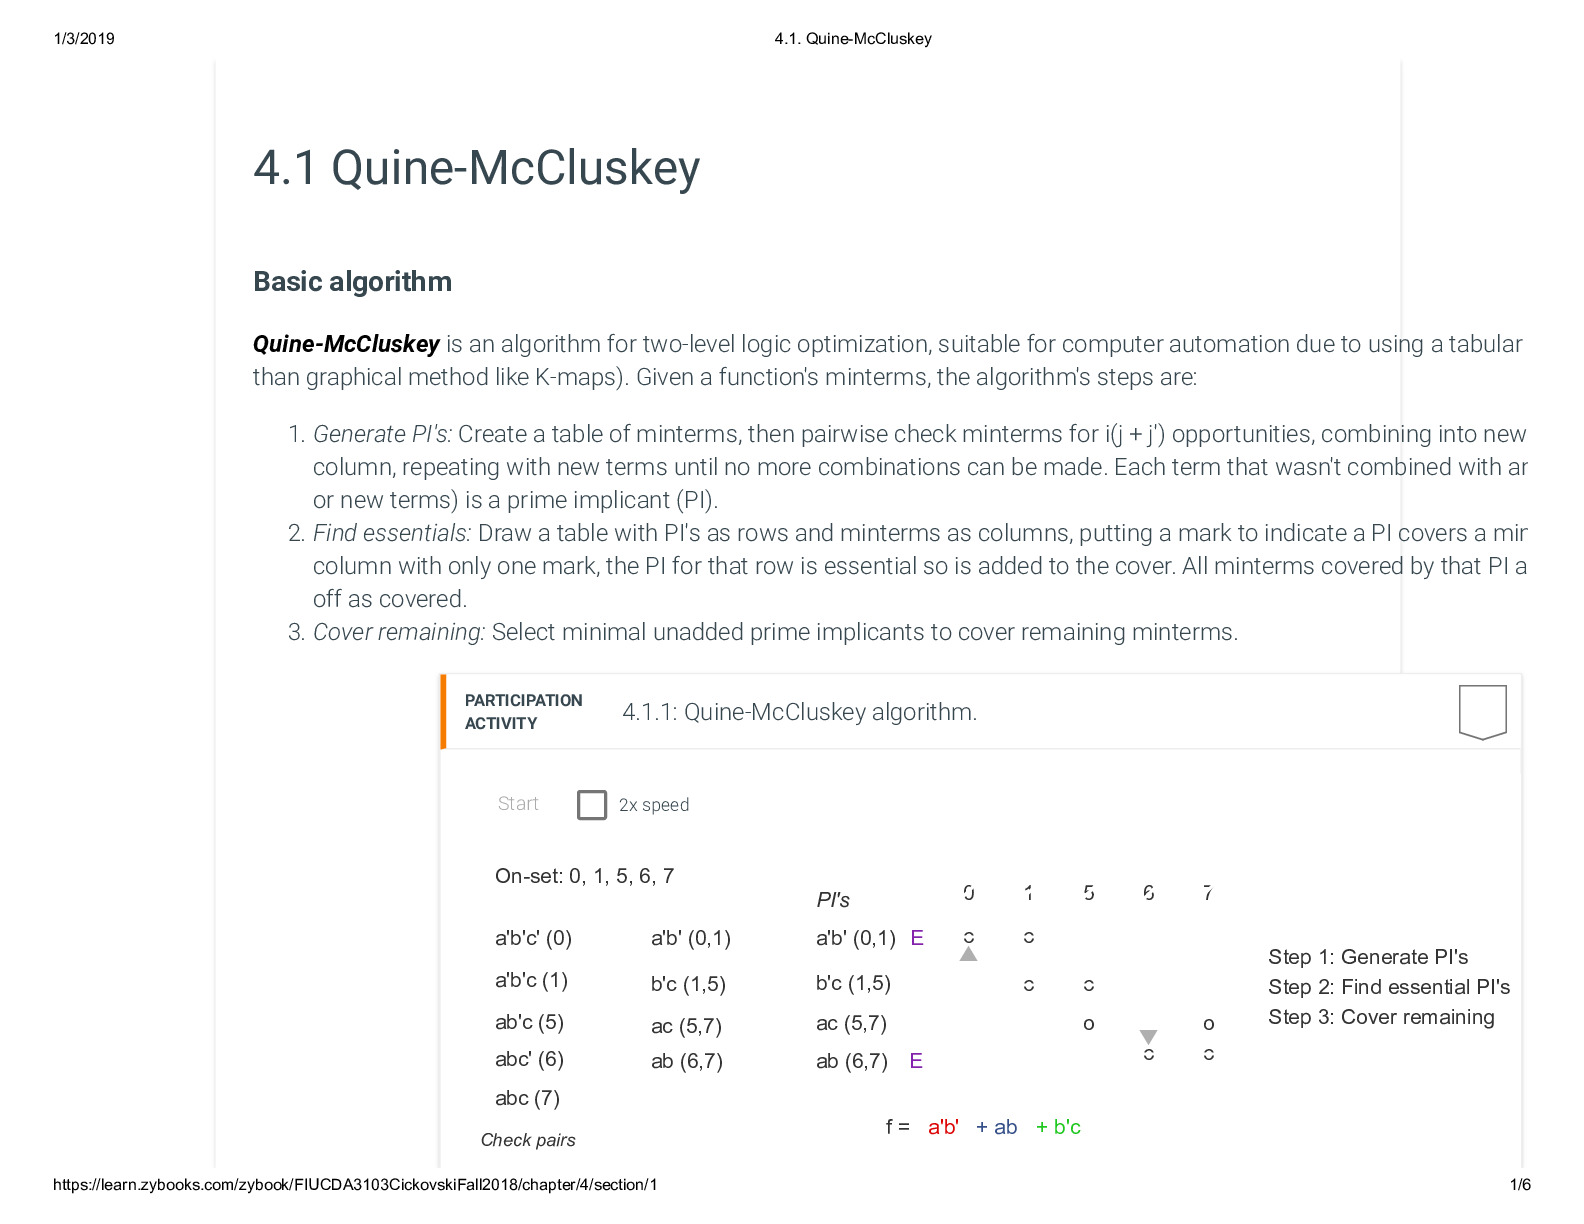 4.1. Quine-McCluskey